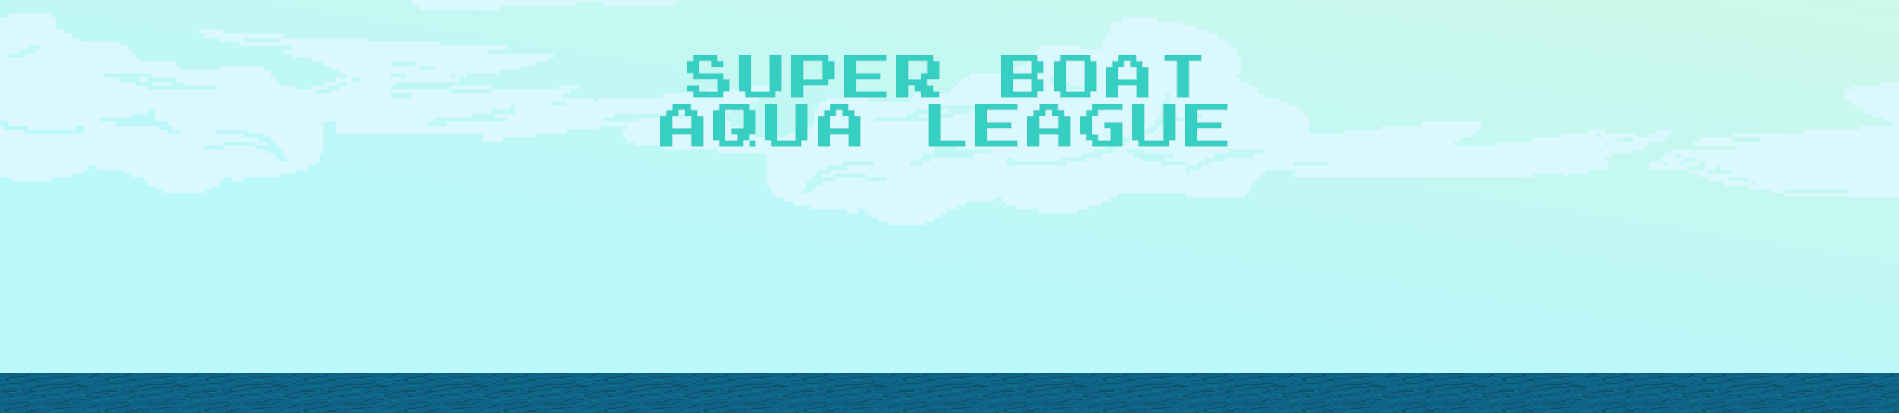 Super Boat Aqua League